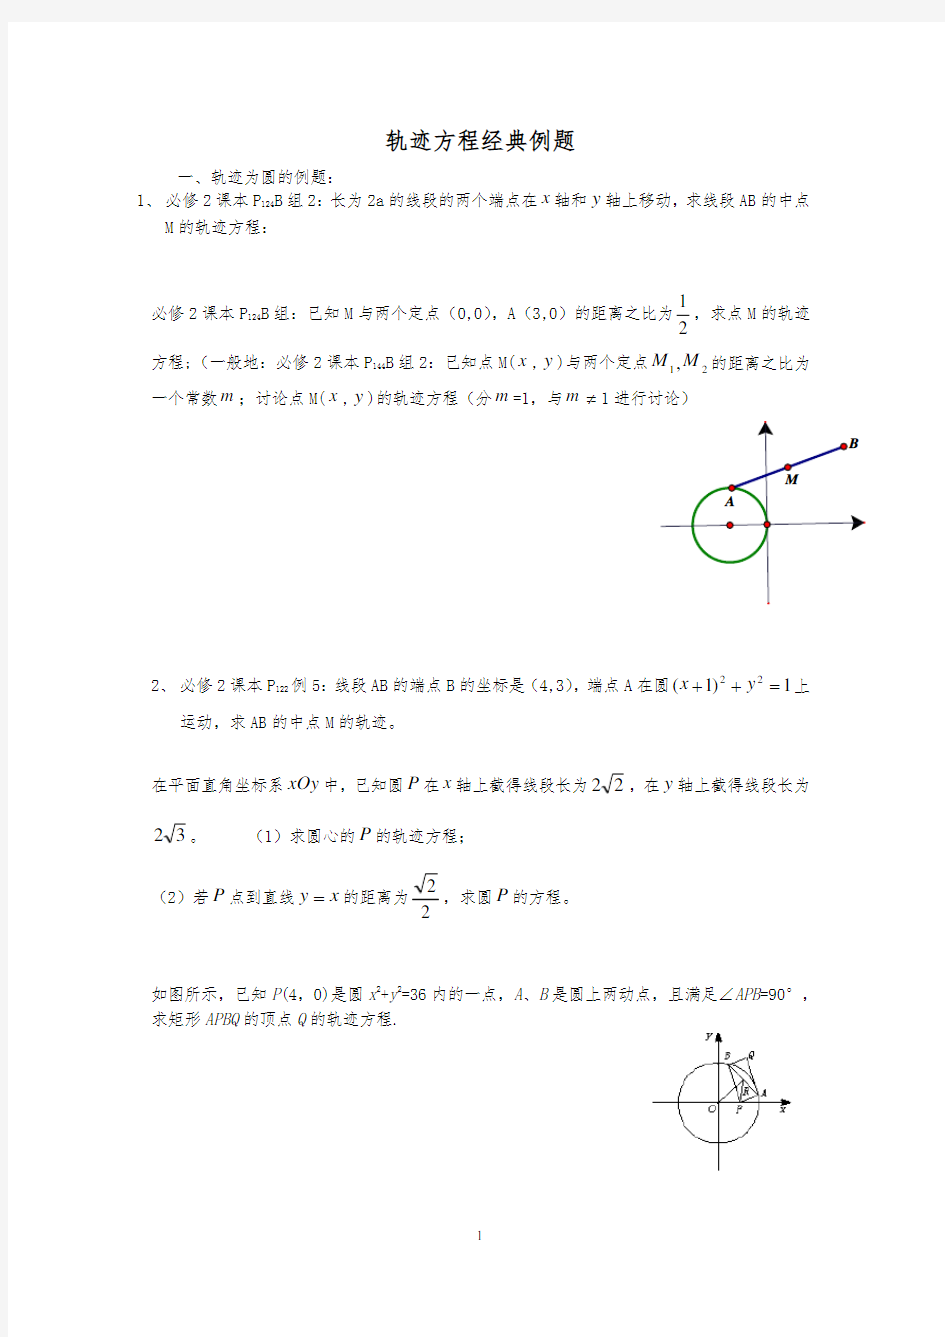 圆锥曲线轨迹方程经典例题